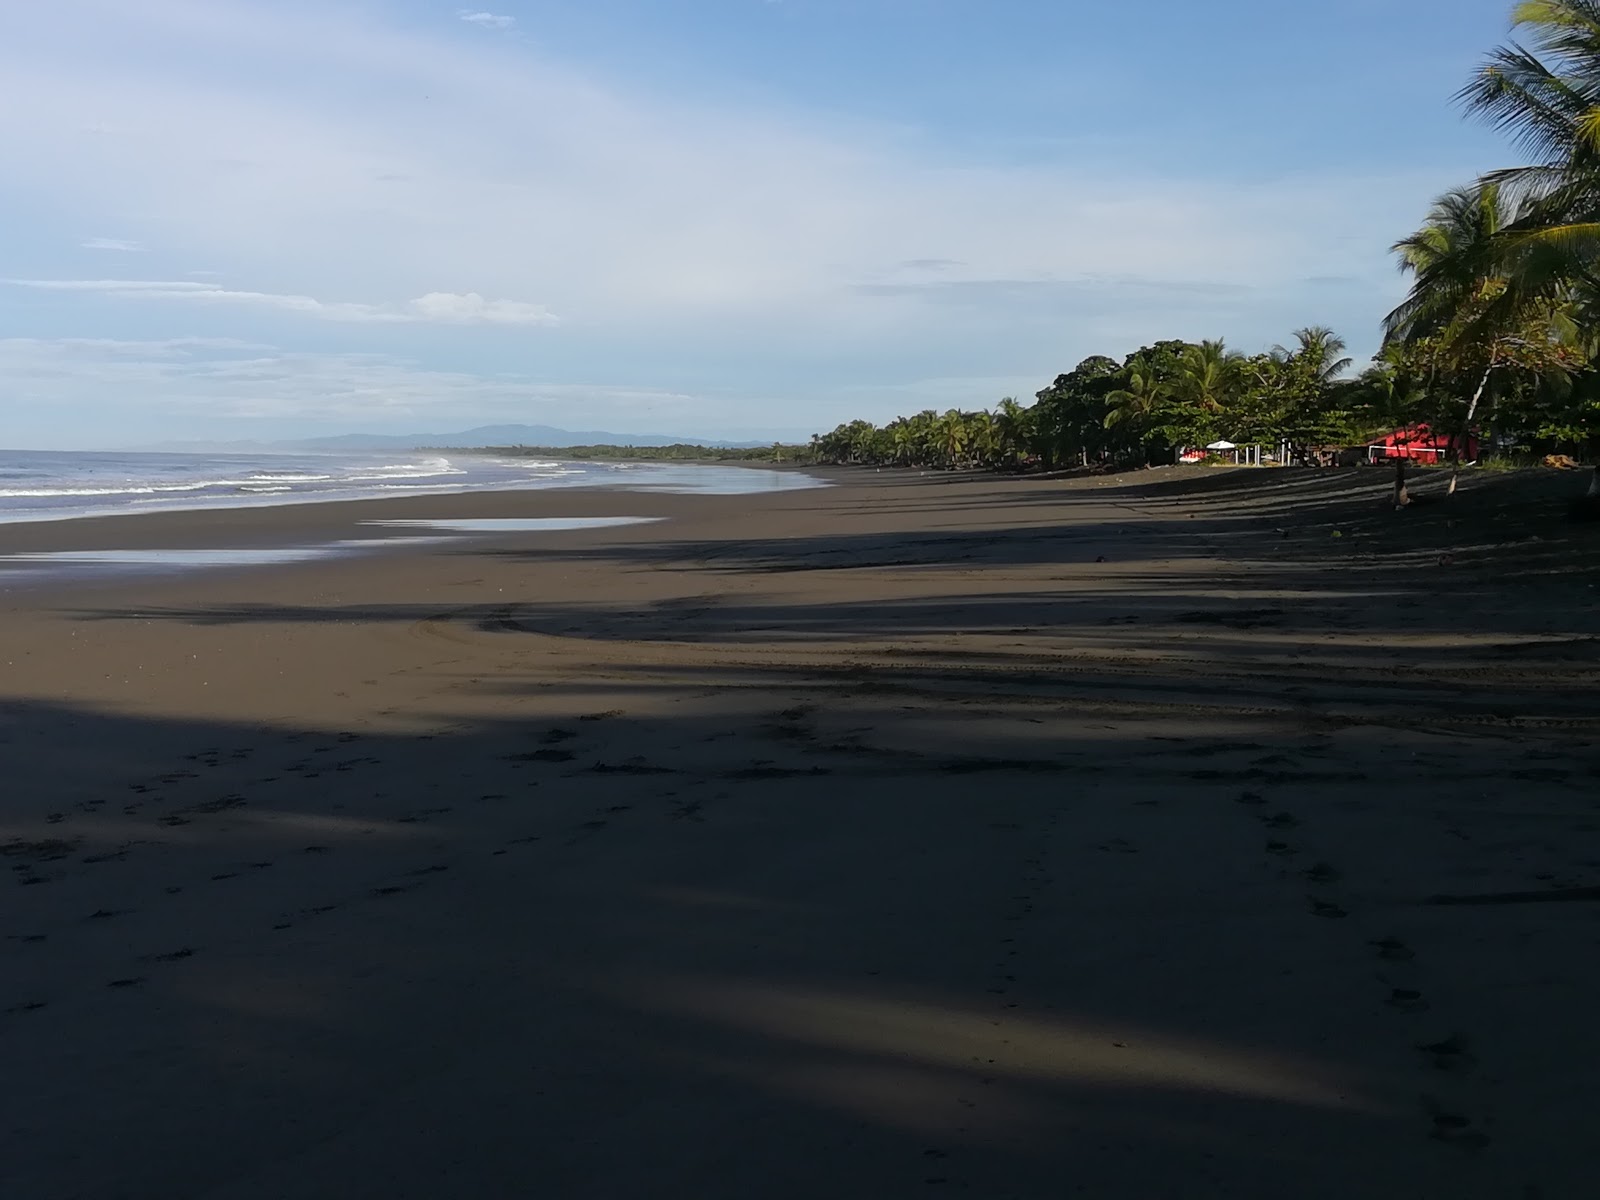 Zdjęcie Playa Quepos z powierzchnią jasny piasek